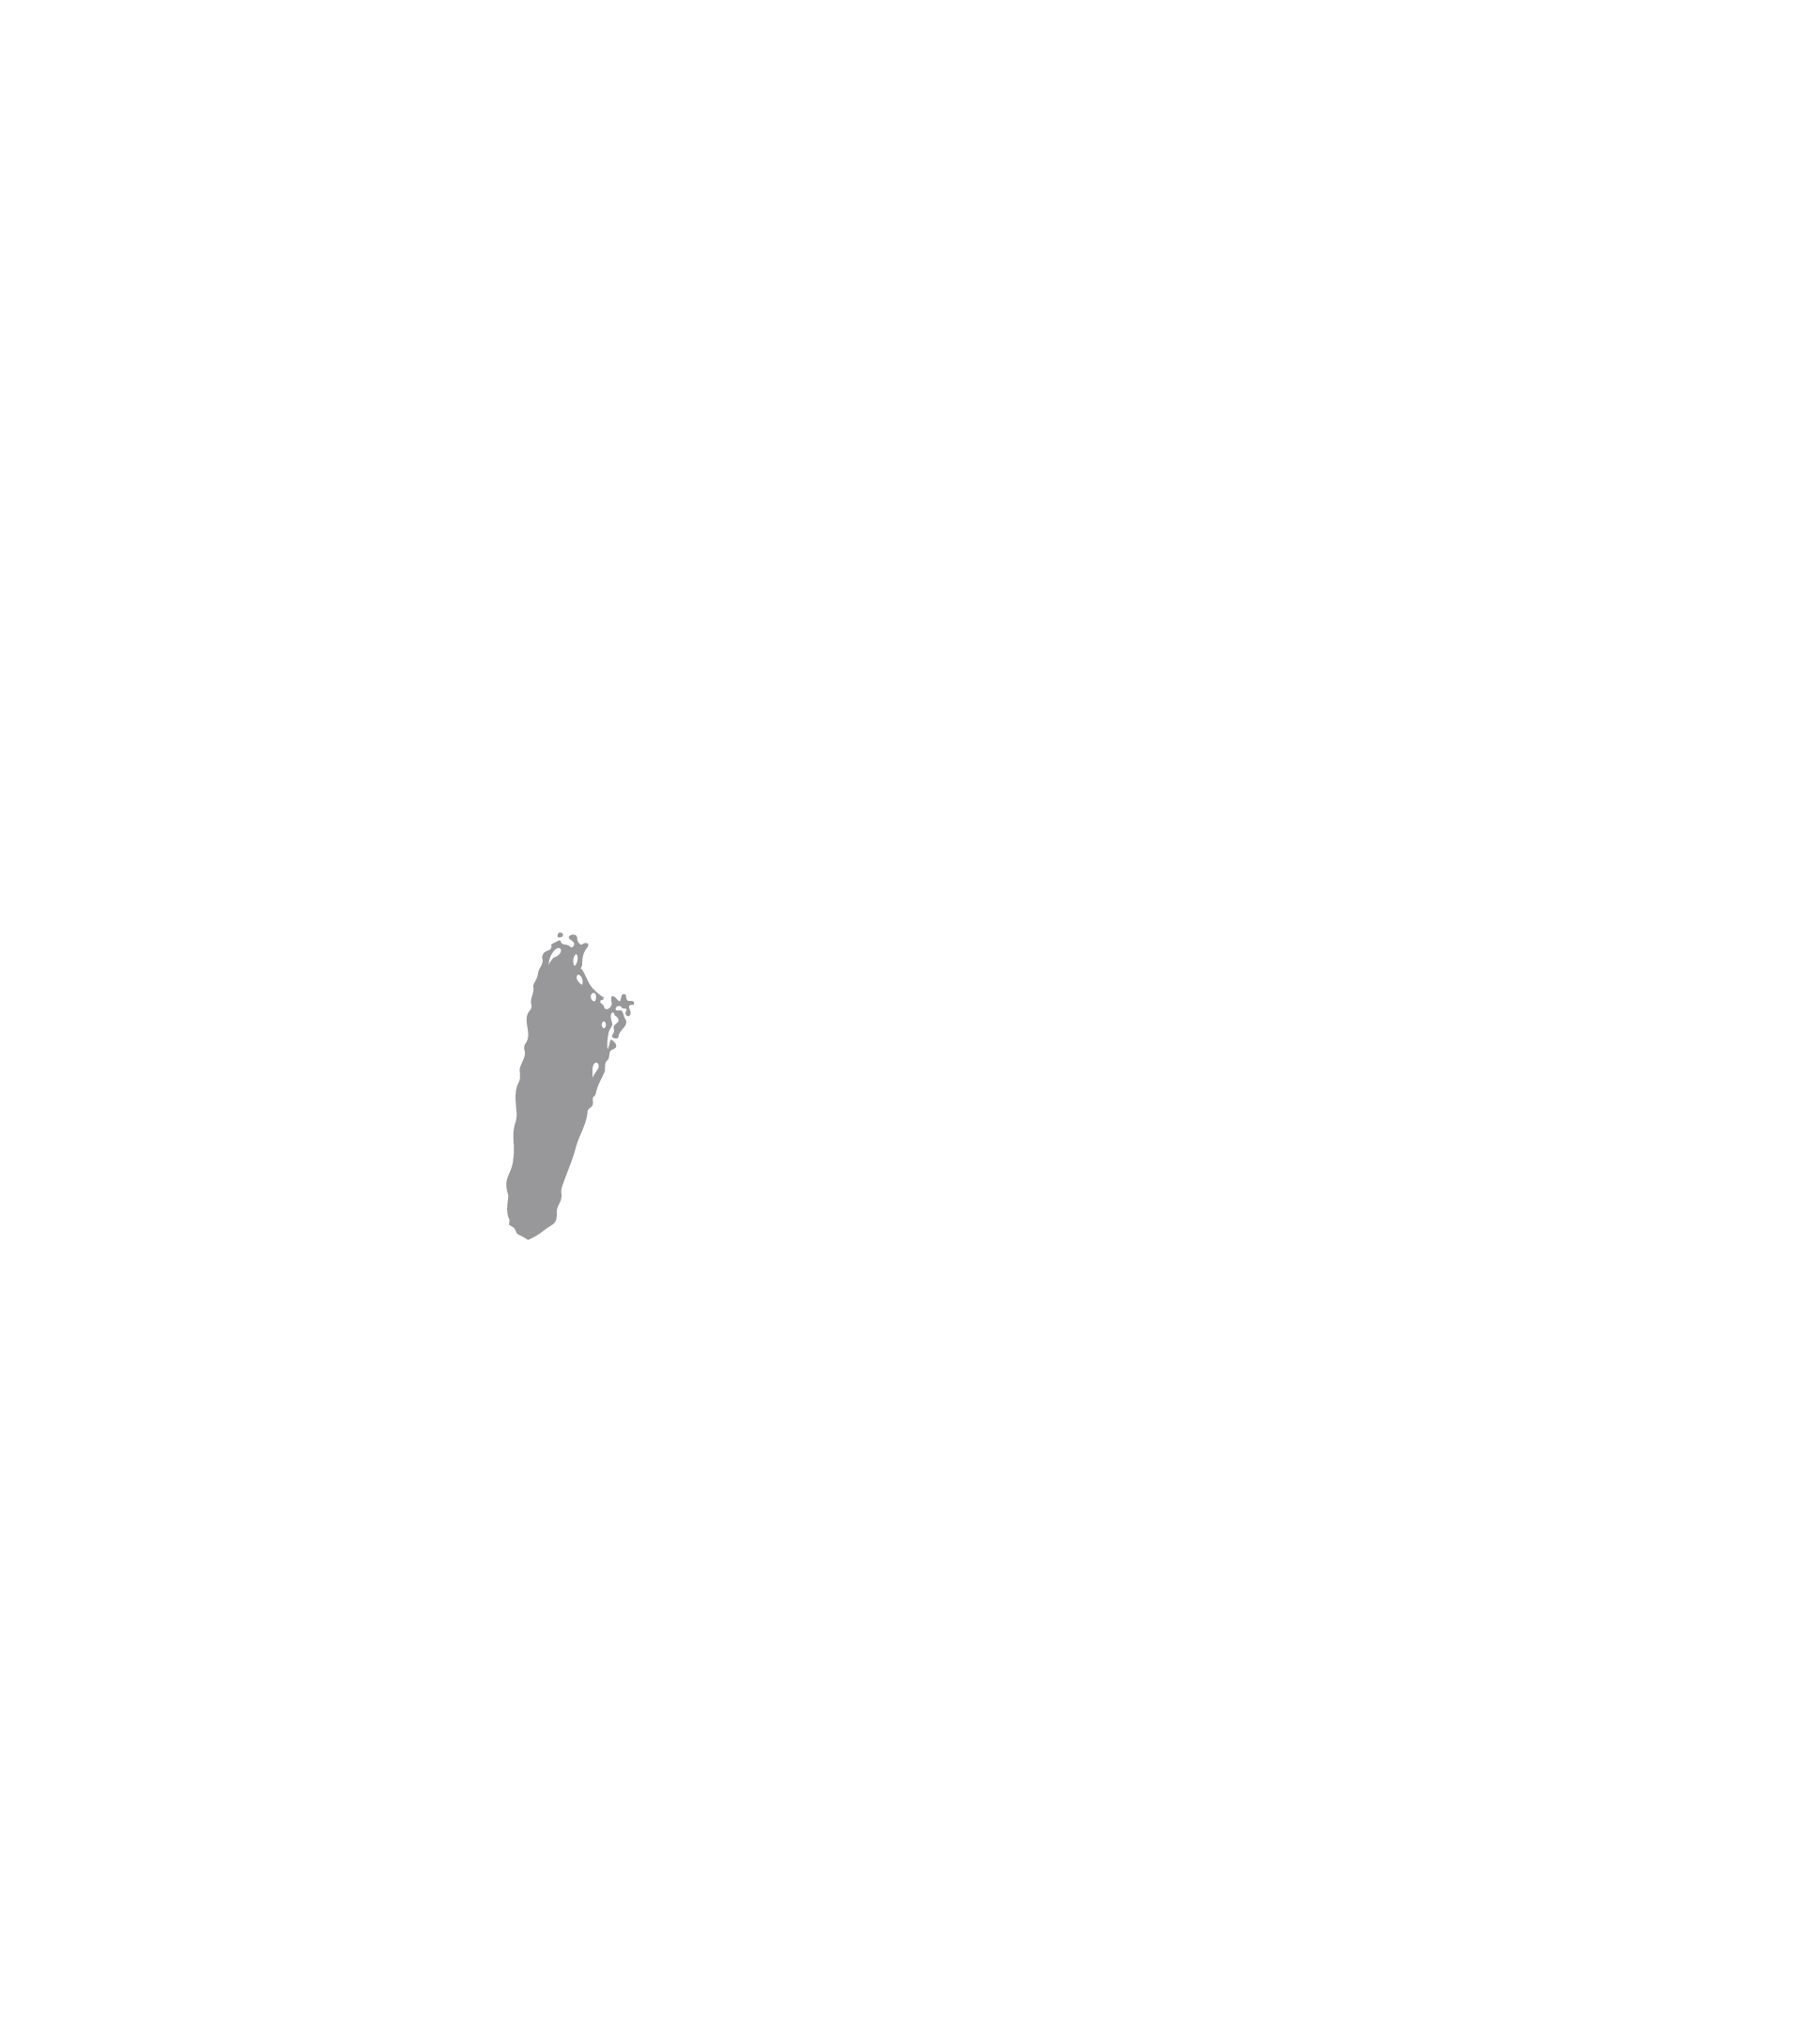 War Dog